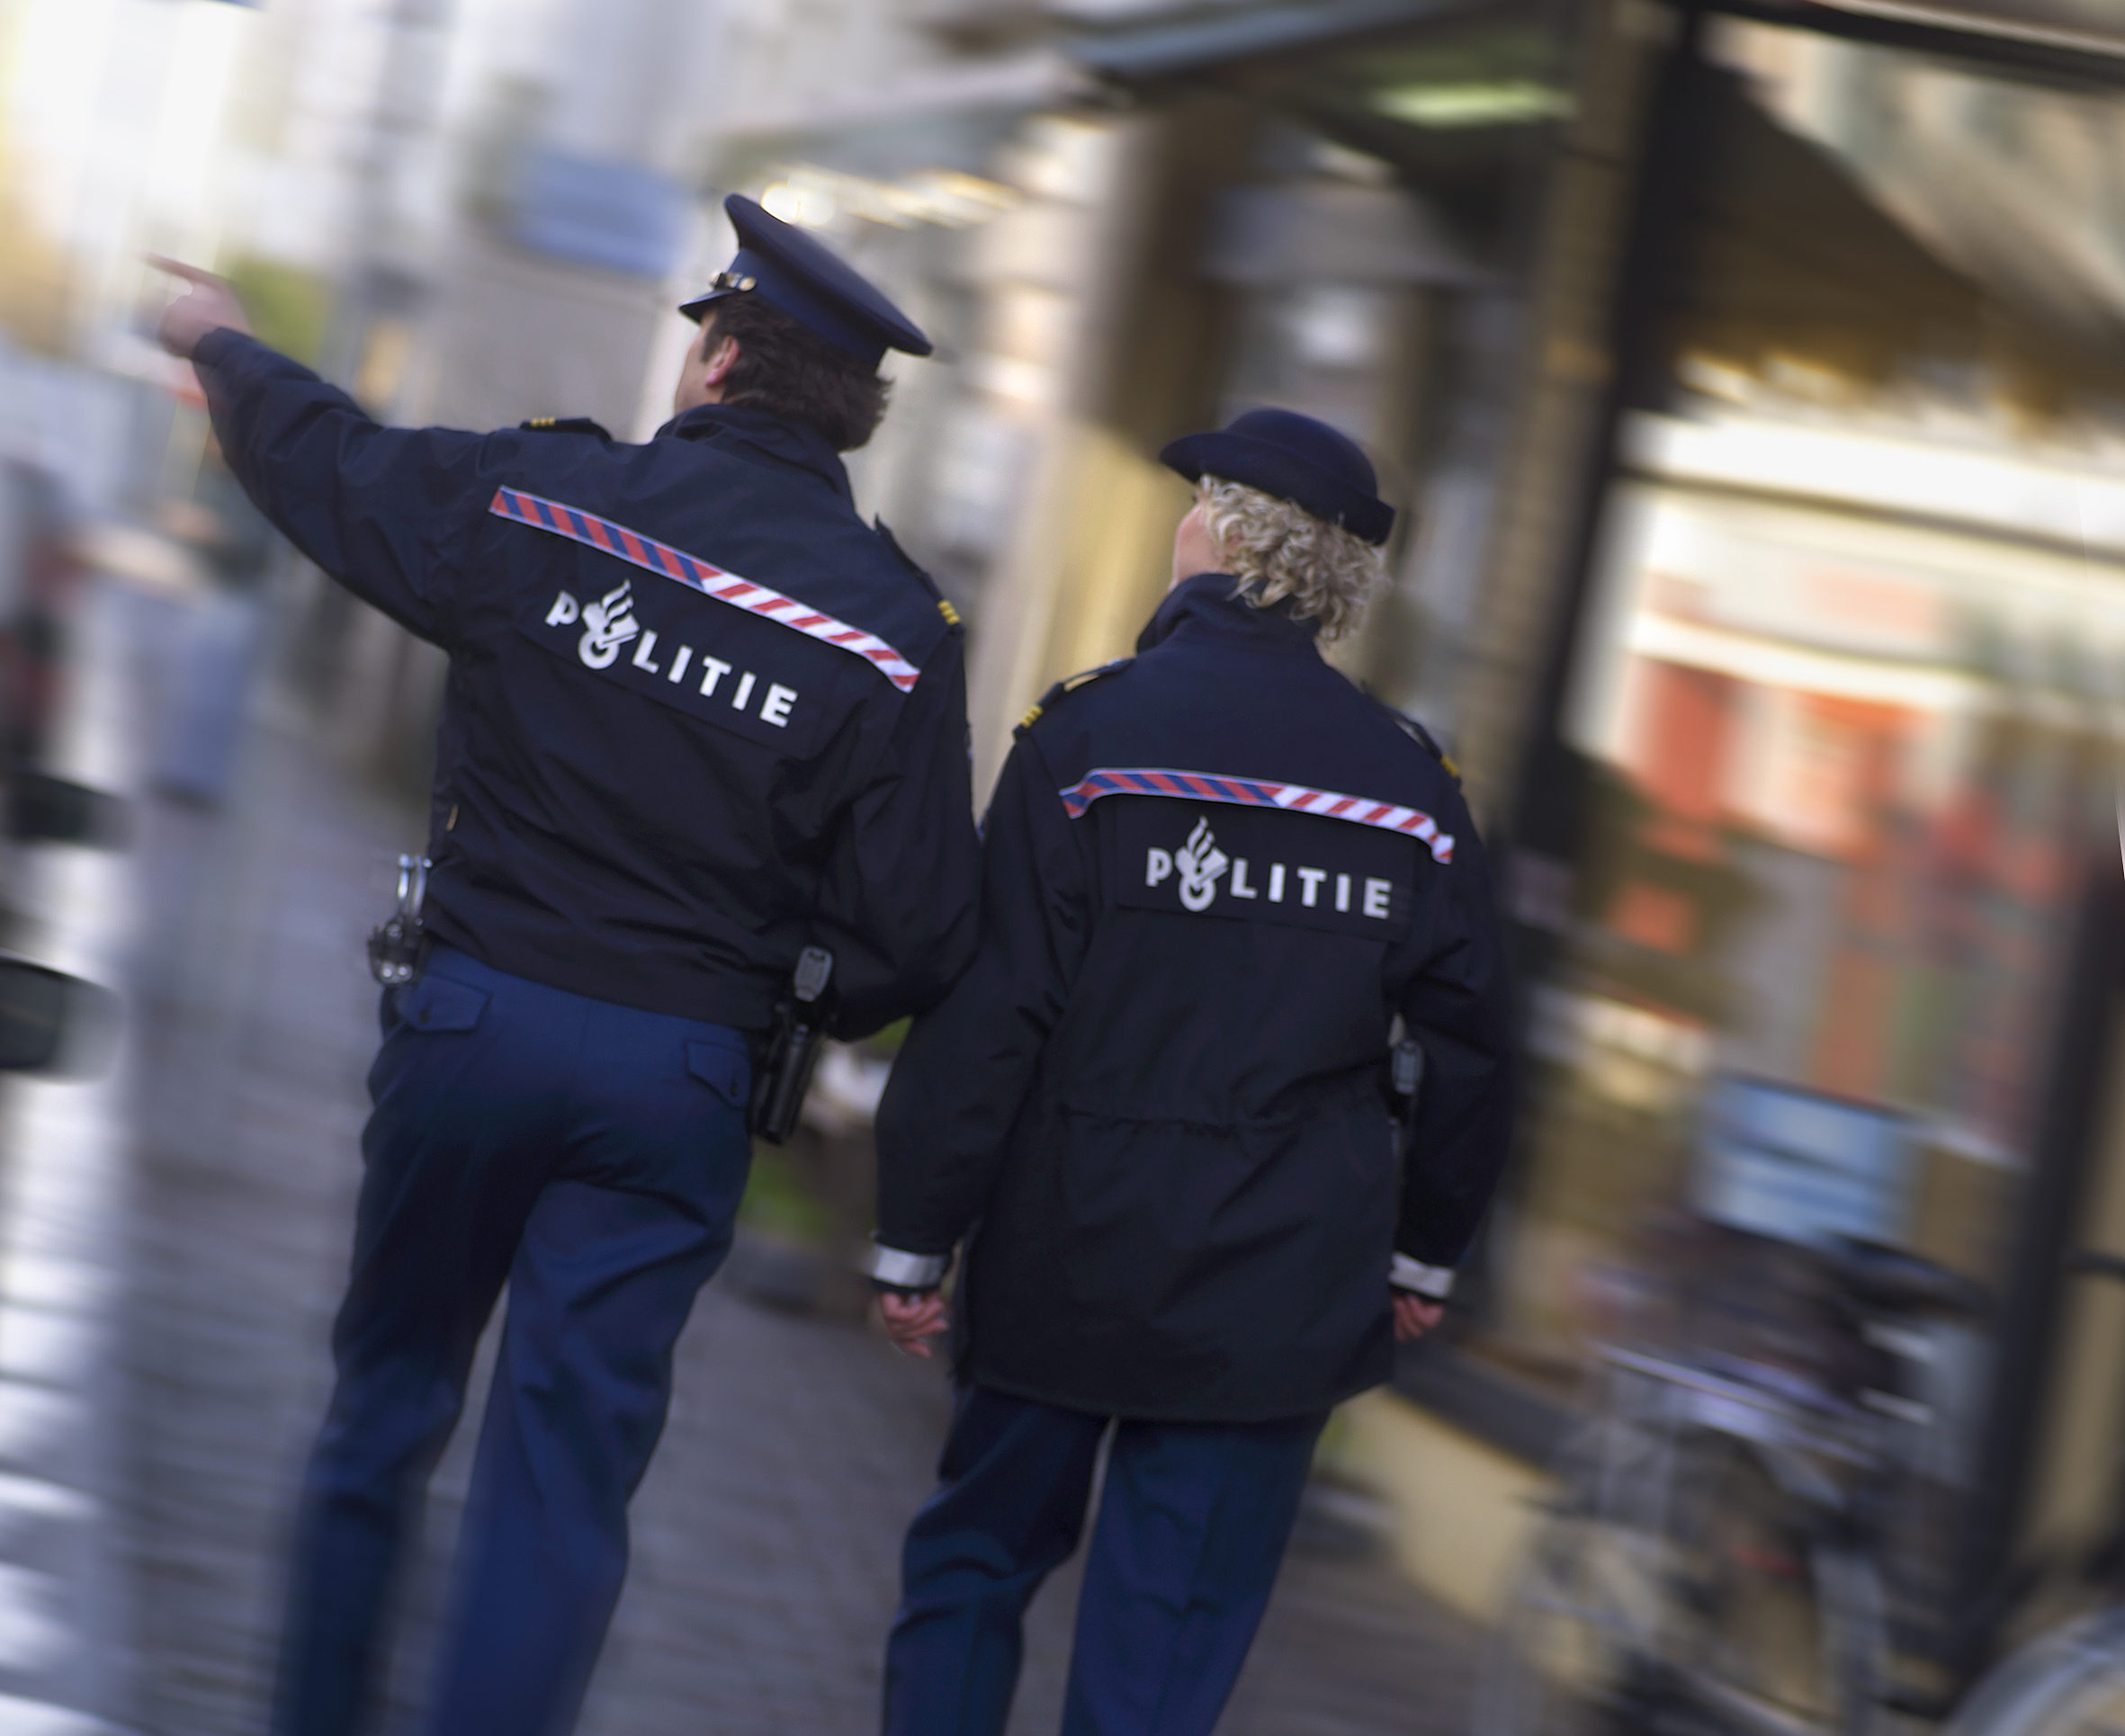 workforce planning dutch police case